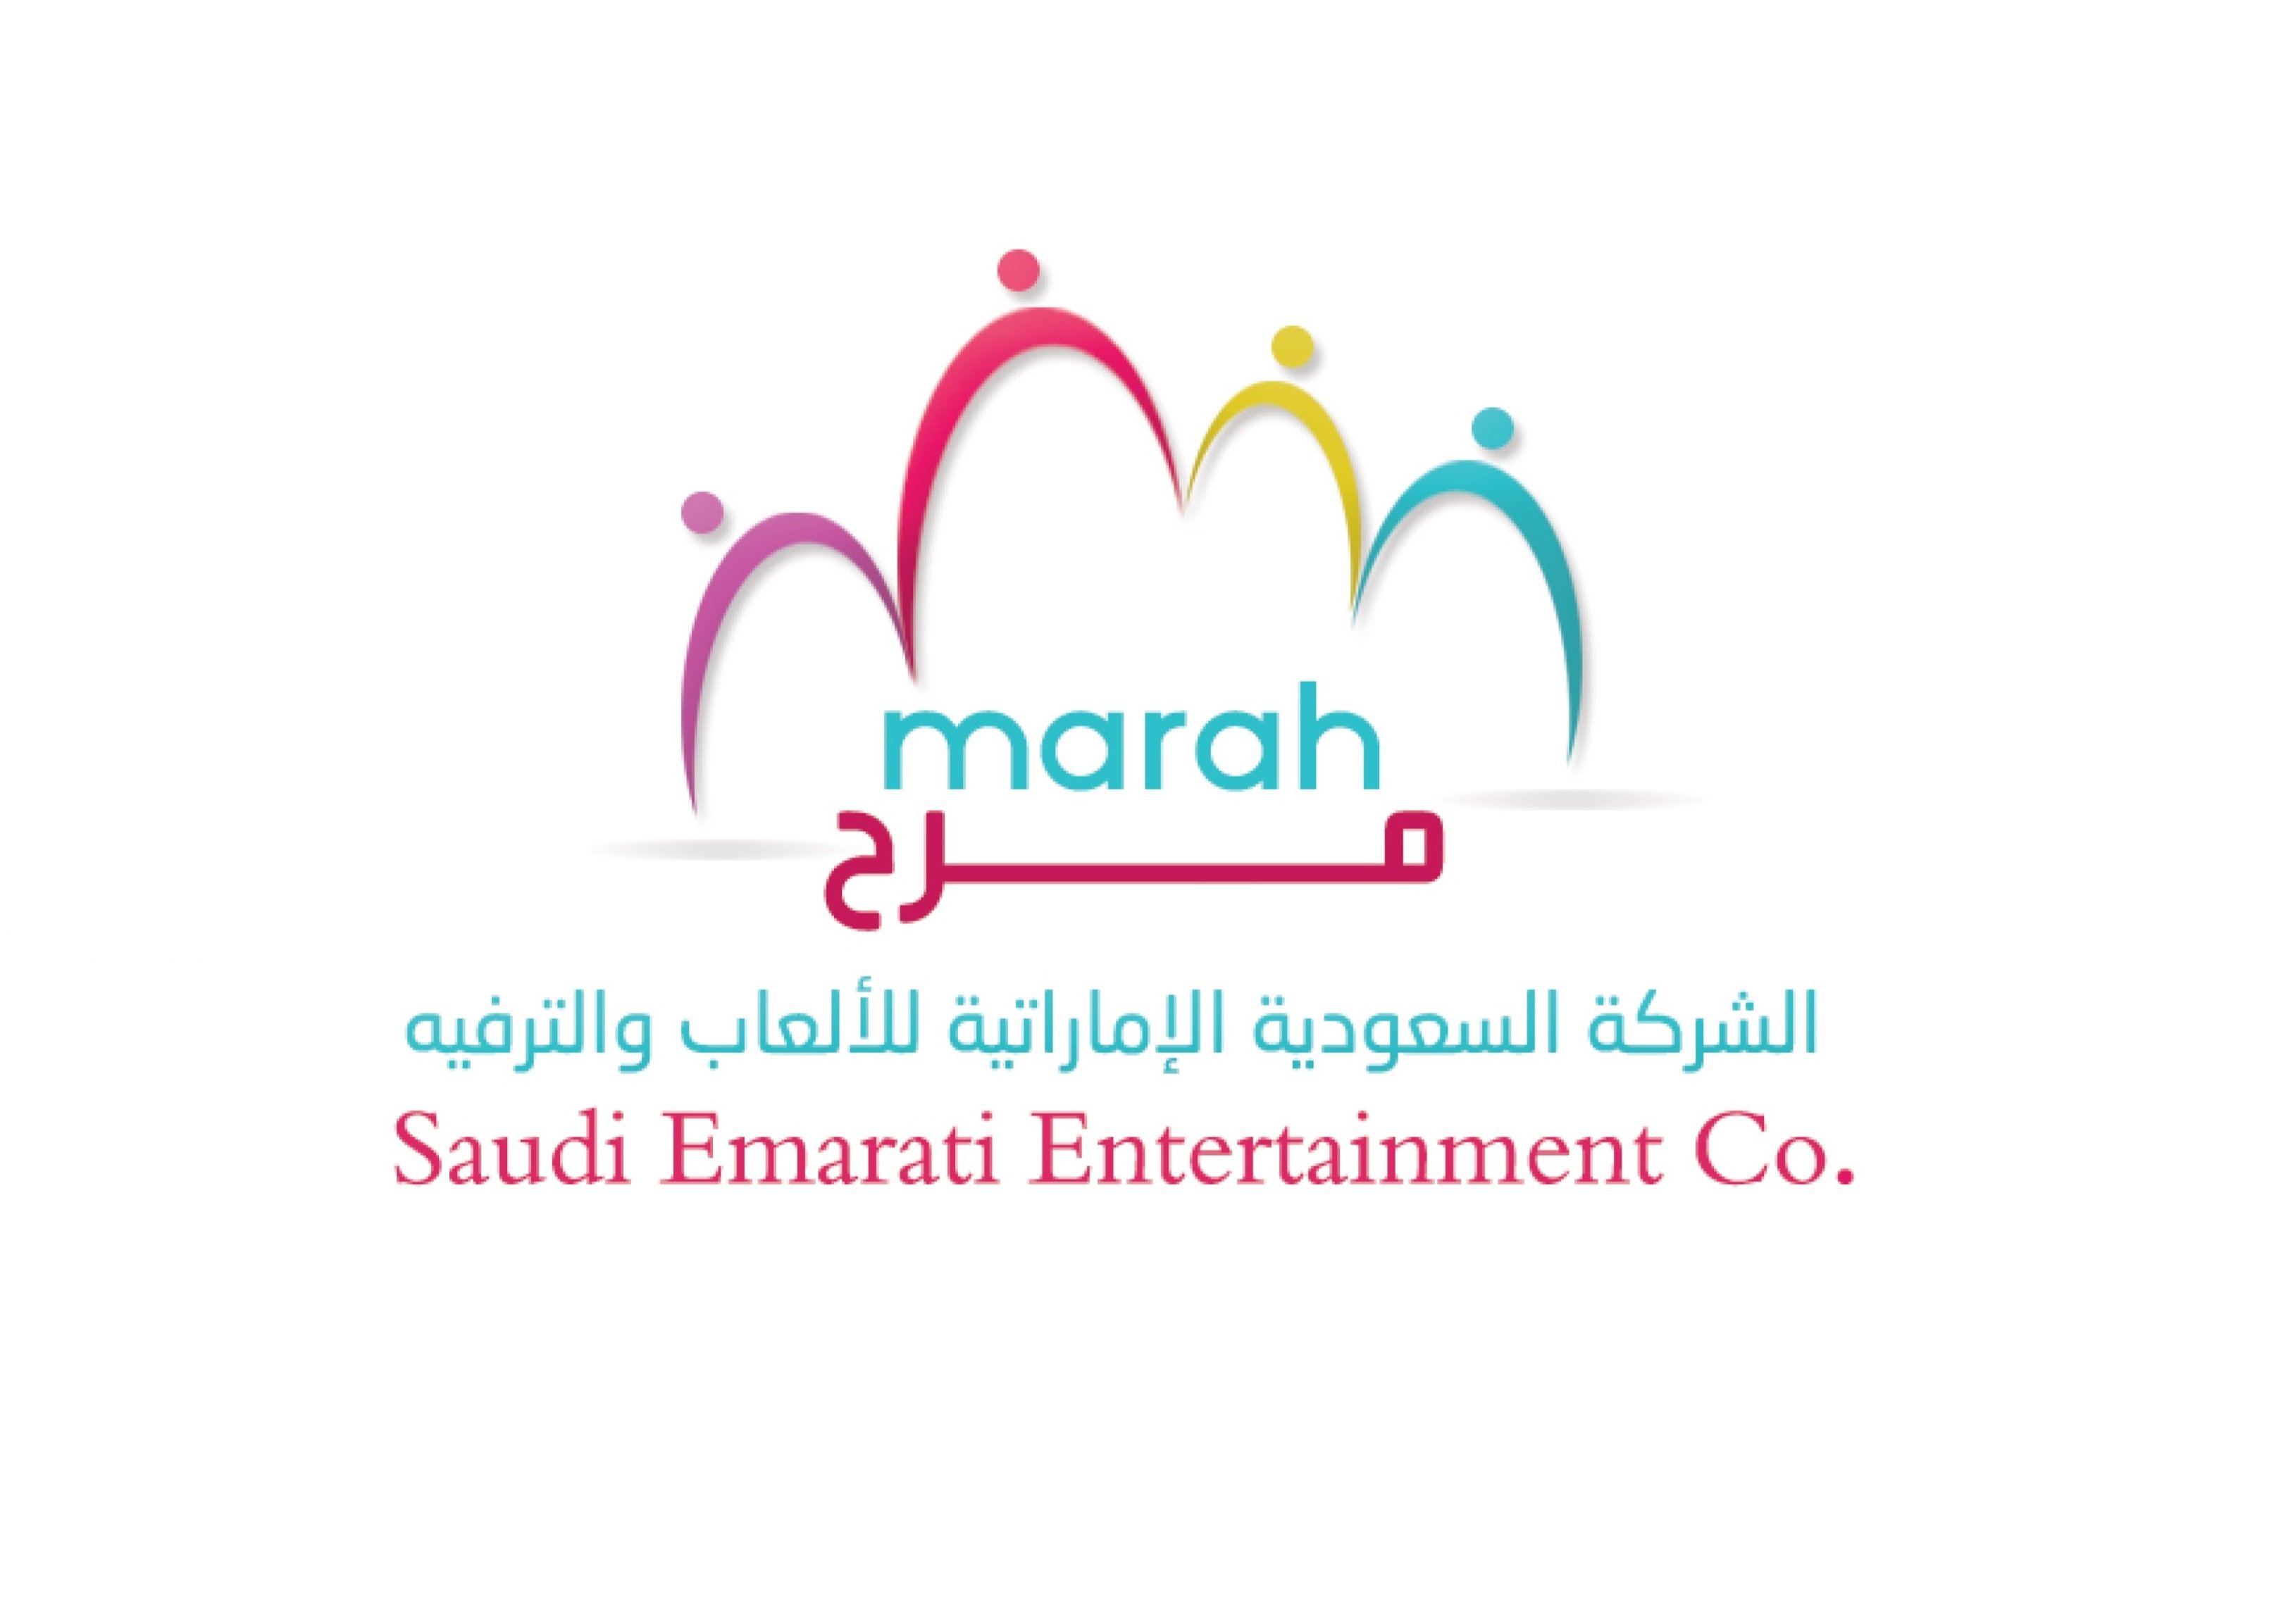 الحساب الرسمي لشركة مرح السعودية الإماراتية للألعاب والترفيه
نجعل من الترفيه رياضة نسعد باستقبال ملاحظاتكم واستفساراتكم على الرقم 920003987